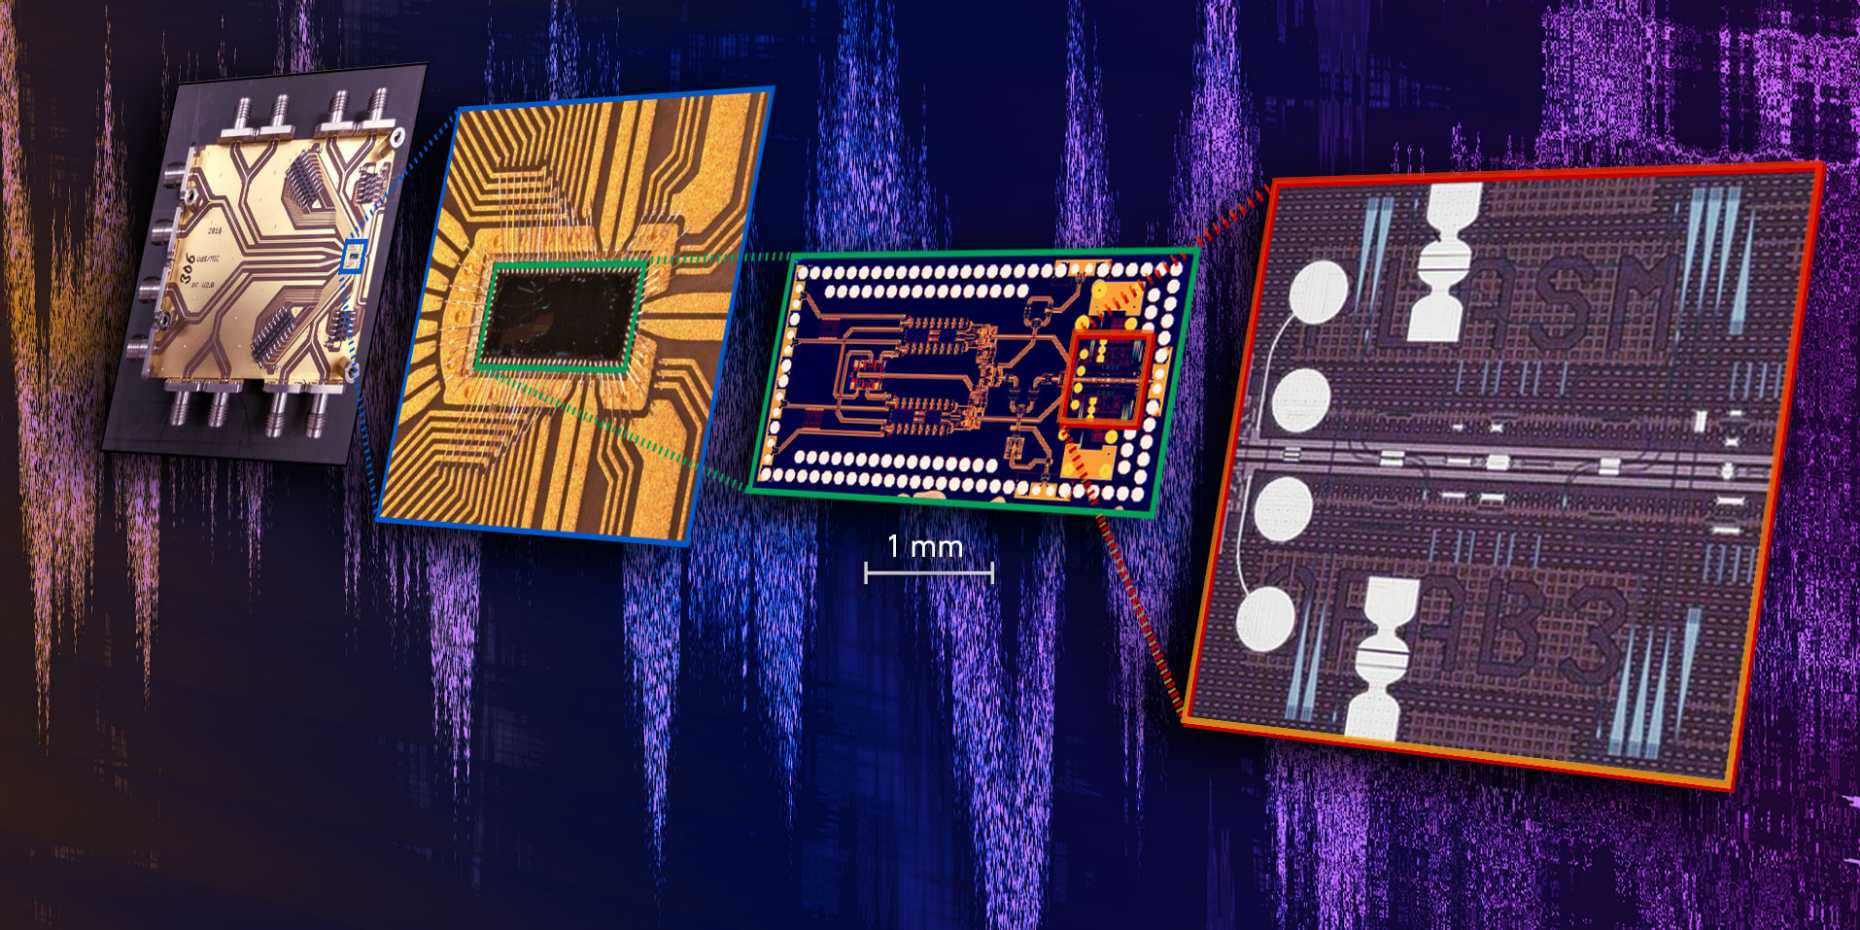 Vergr?sserte Ansicht: Der neue, hochkompakte Chip fügt erstmals schnellste elektronische und lichtbasierte Bauelemente in einer Komponente zusammen. Damit wird eine rekordschnelle Datenübertragung möglich. (Bild: ETH Zürich / Nature Electronics)